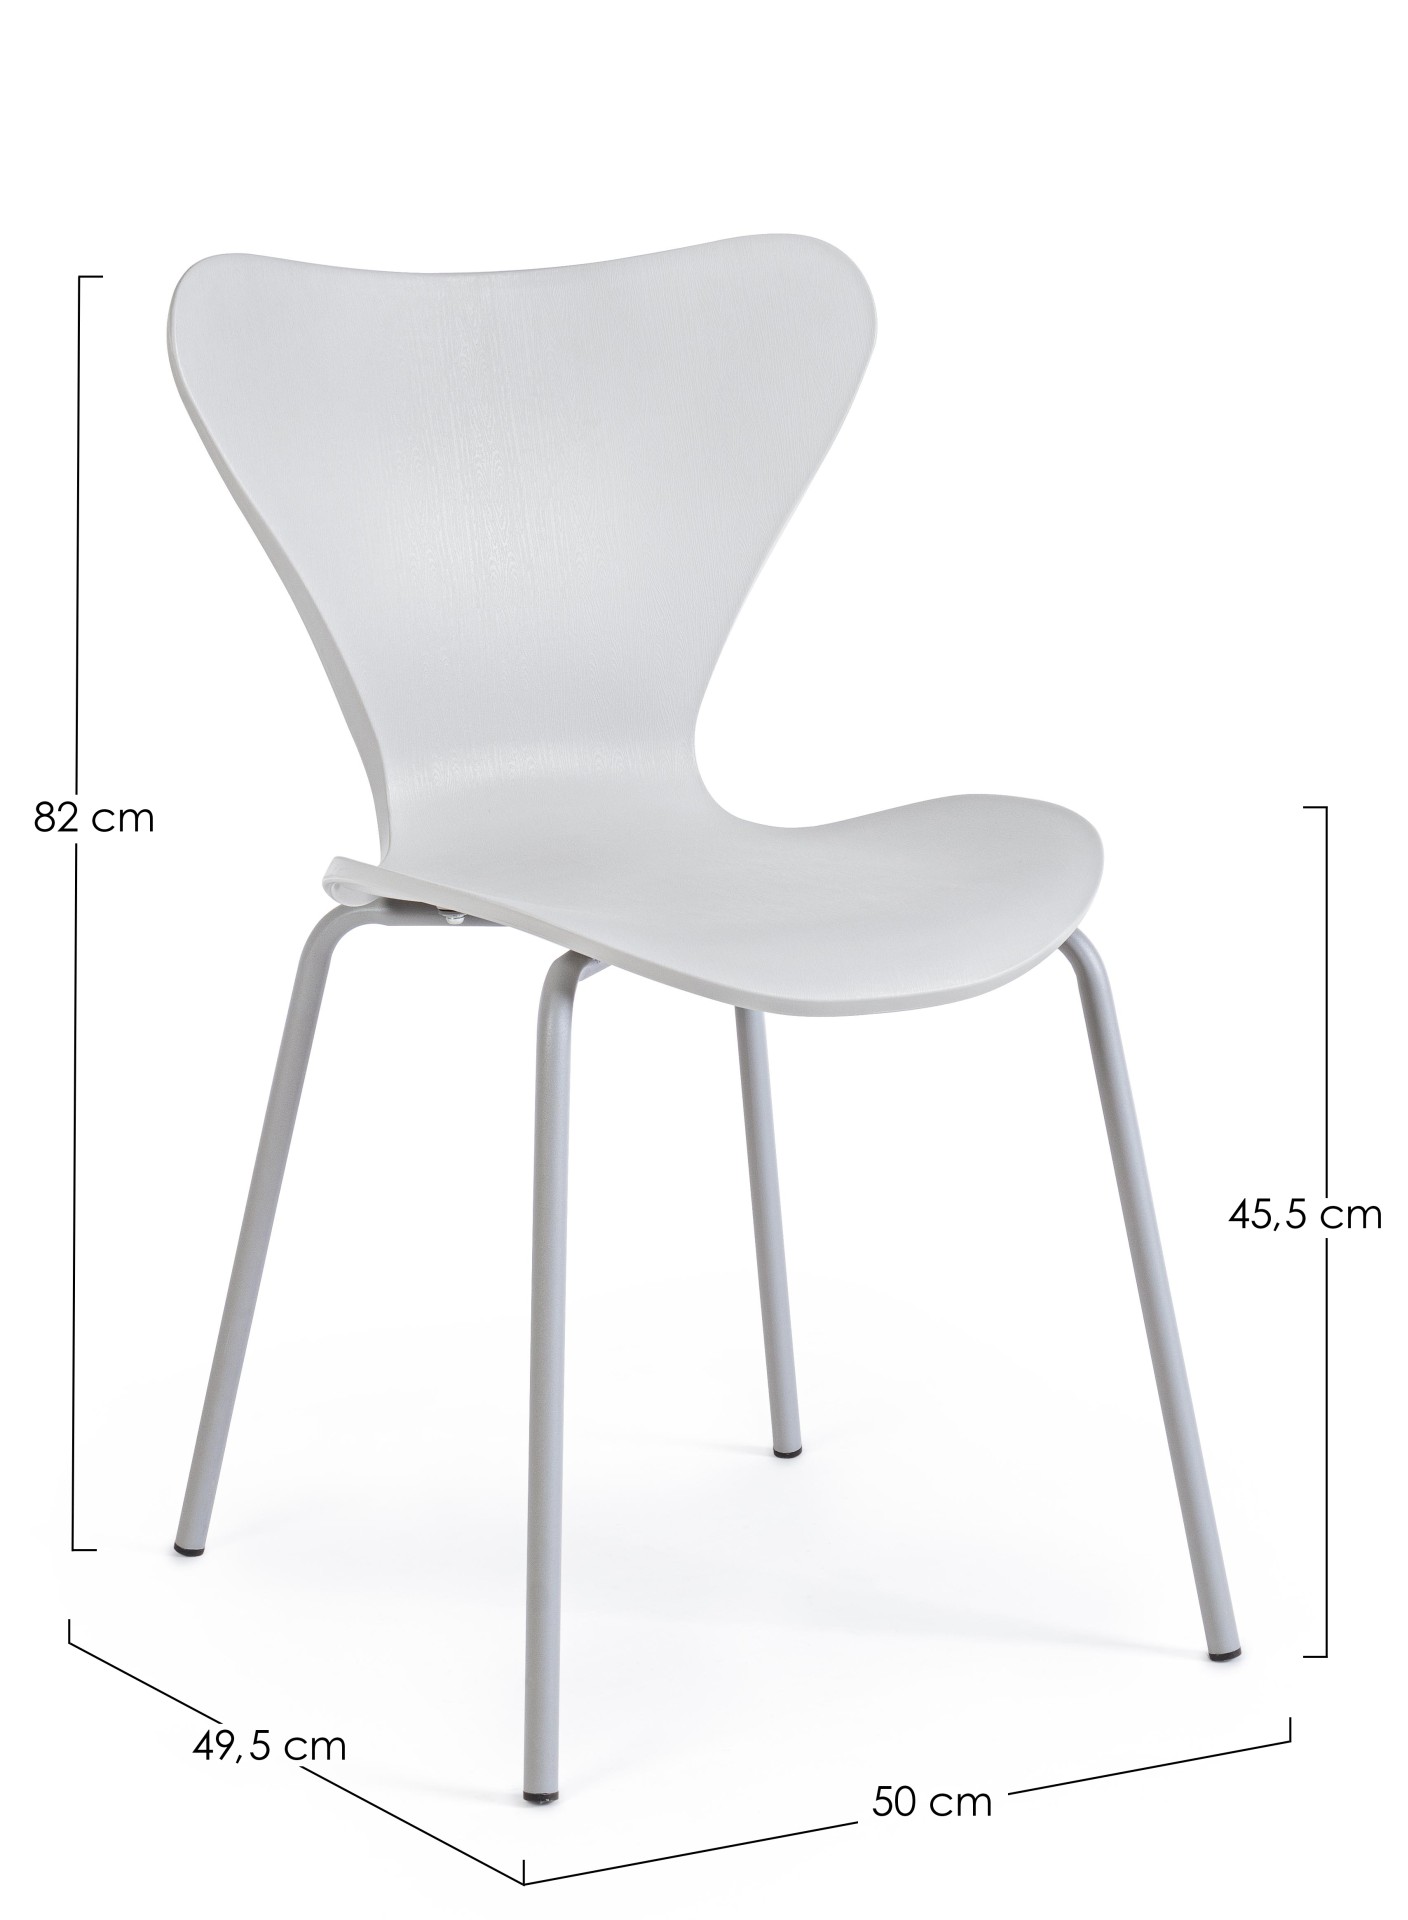 Der Stuhl Tessa überzeugt mit seinem modernem Design. Gefertigt wurde der Stuhl aus Kunststoff, welcher einen hellgrauen Farbton besitzt. Das Gestell ist aus Metall und ist in einer hellgrauen Farbe. Die Sitzhöhe beträgt 45 cm.